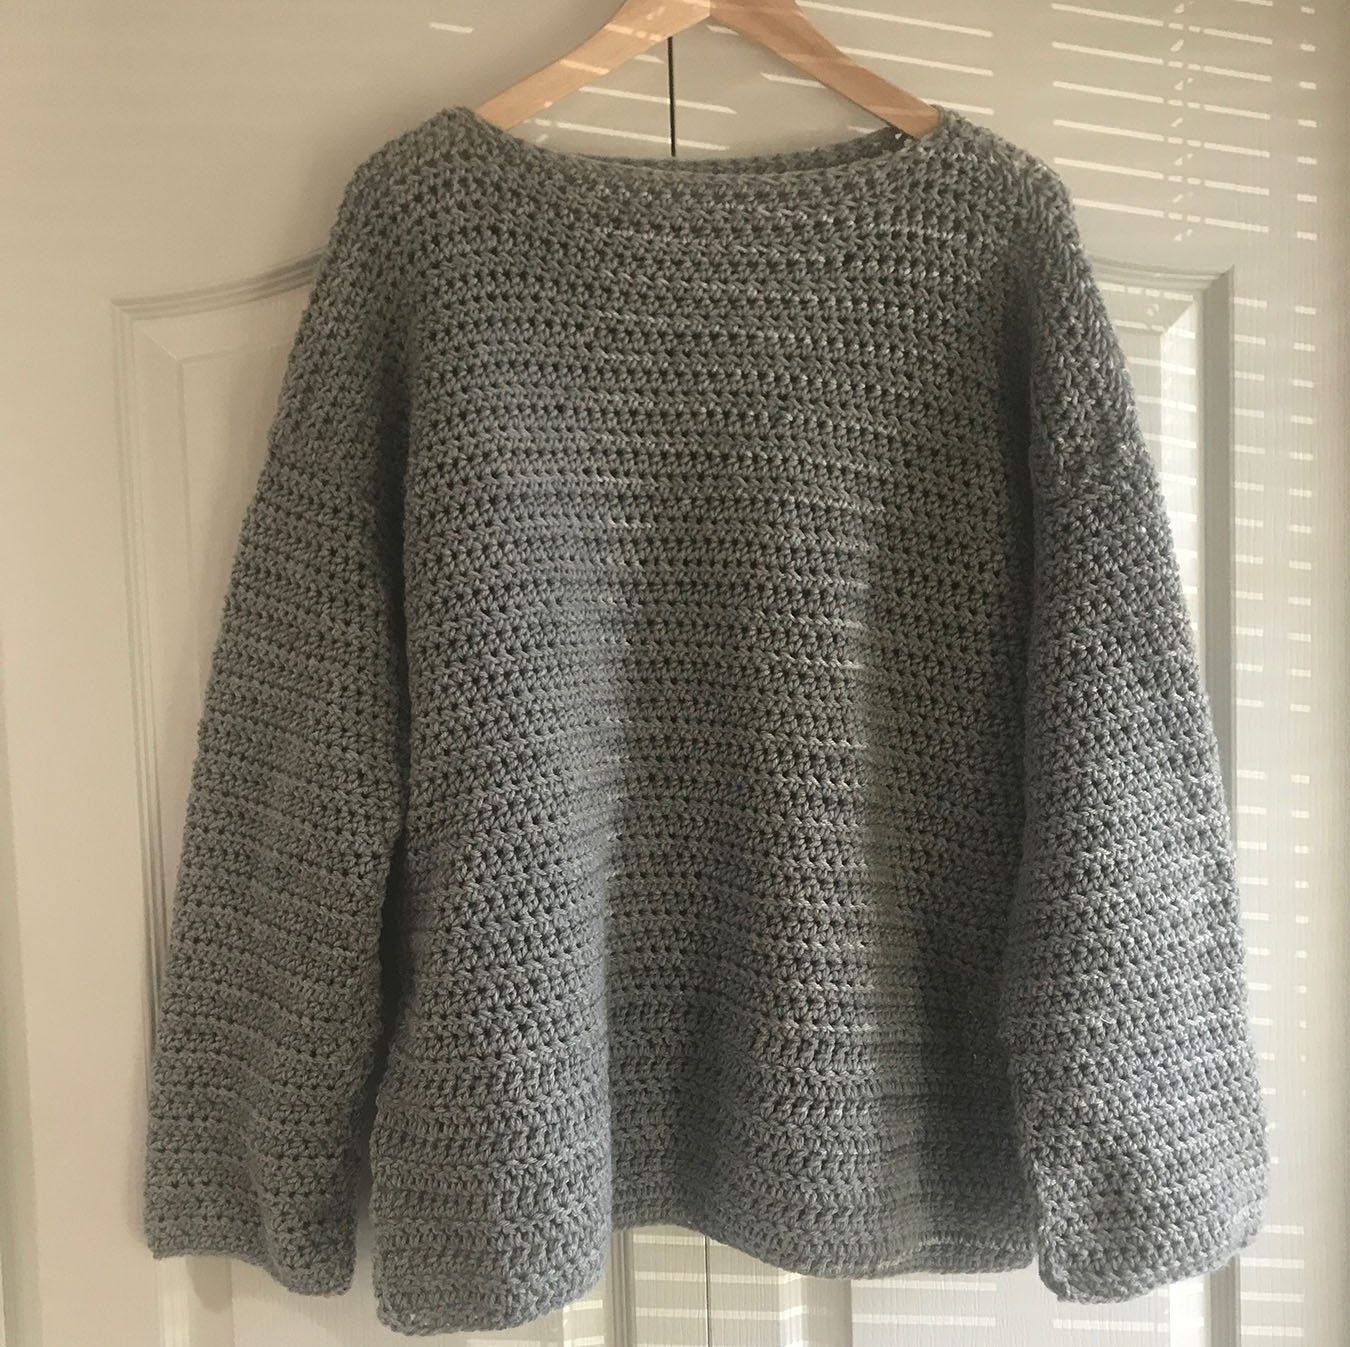 crochet Sweater pattern for beginner 